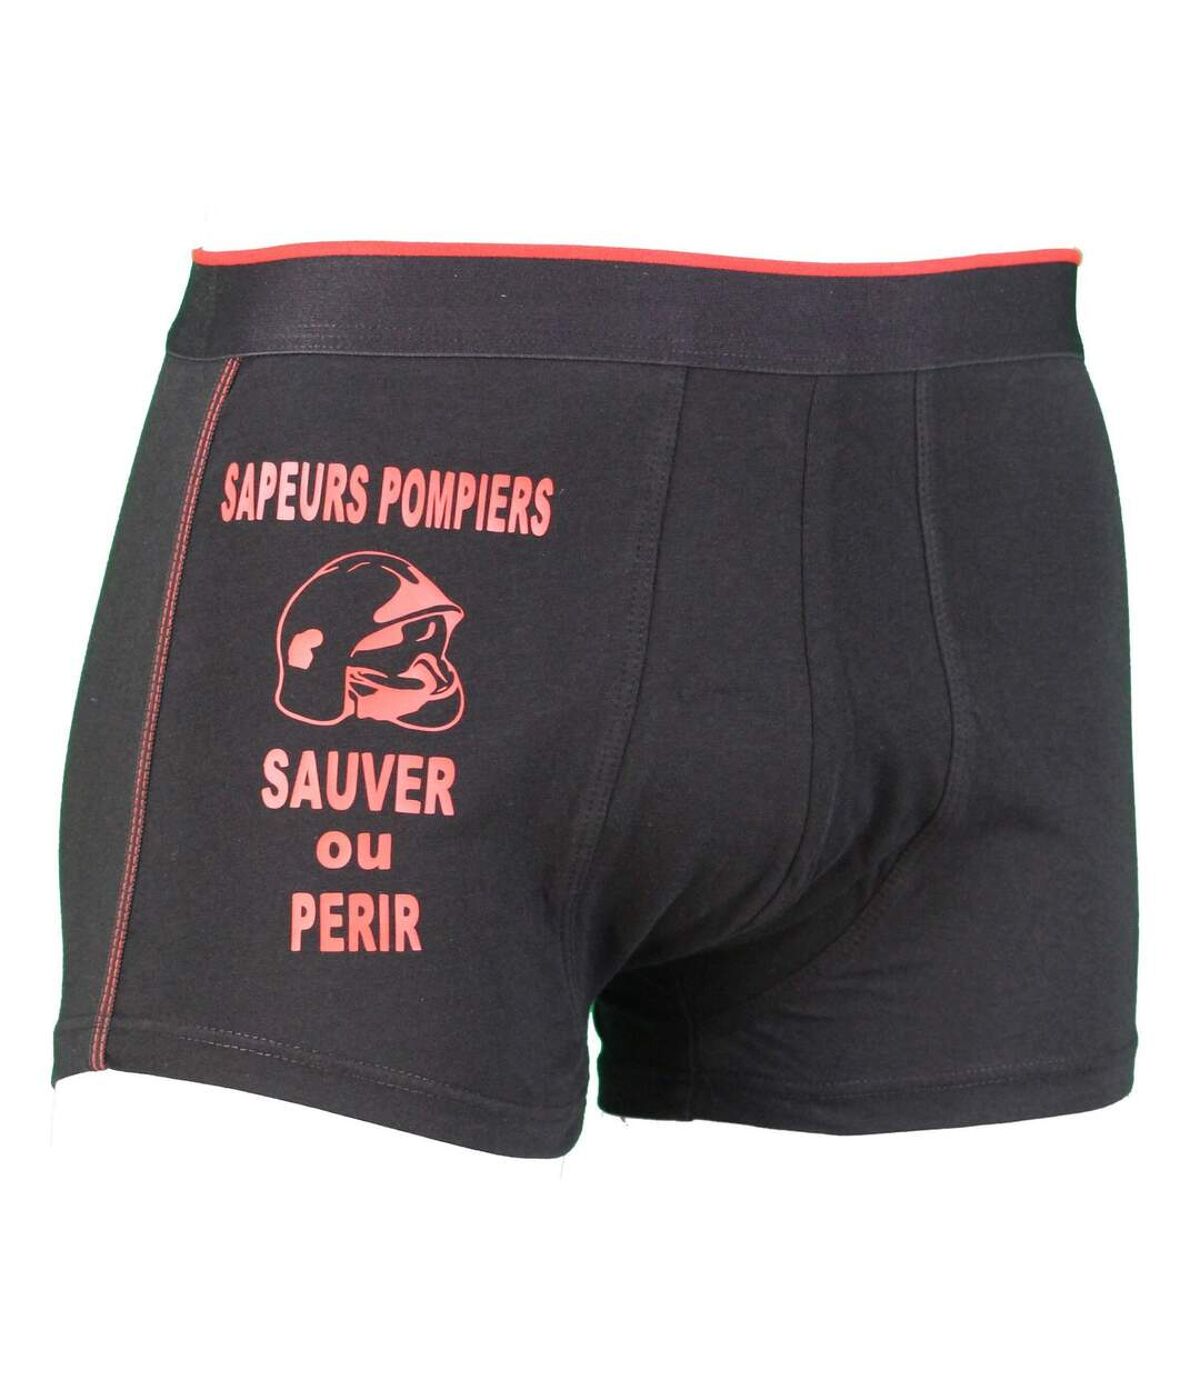 Boxer Sapeurs Pompiers Sauver ou Périr - Homme - noir